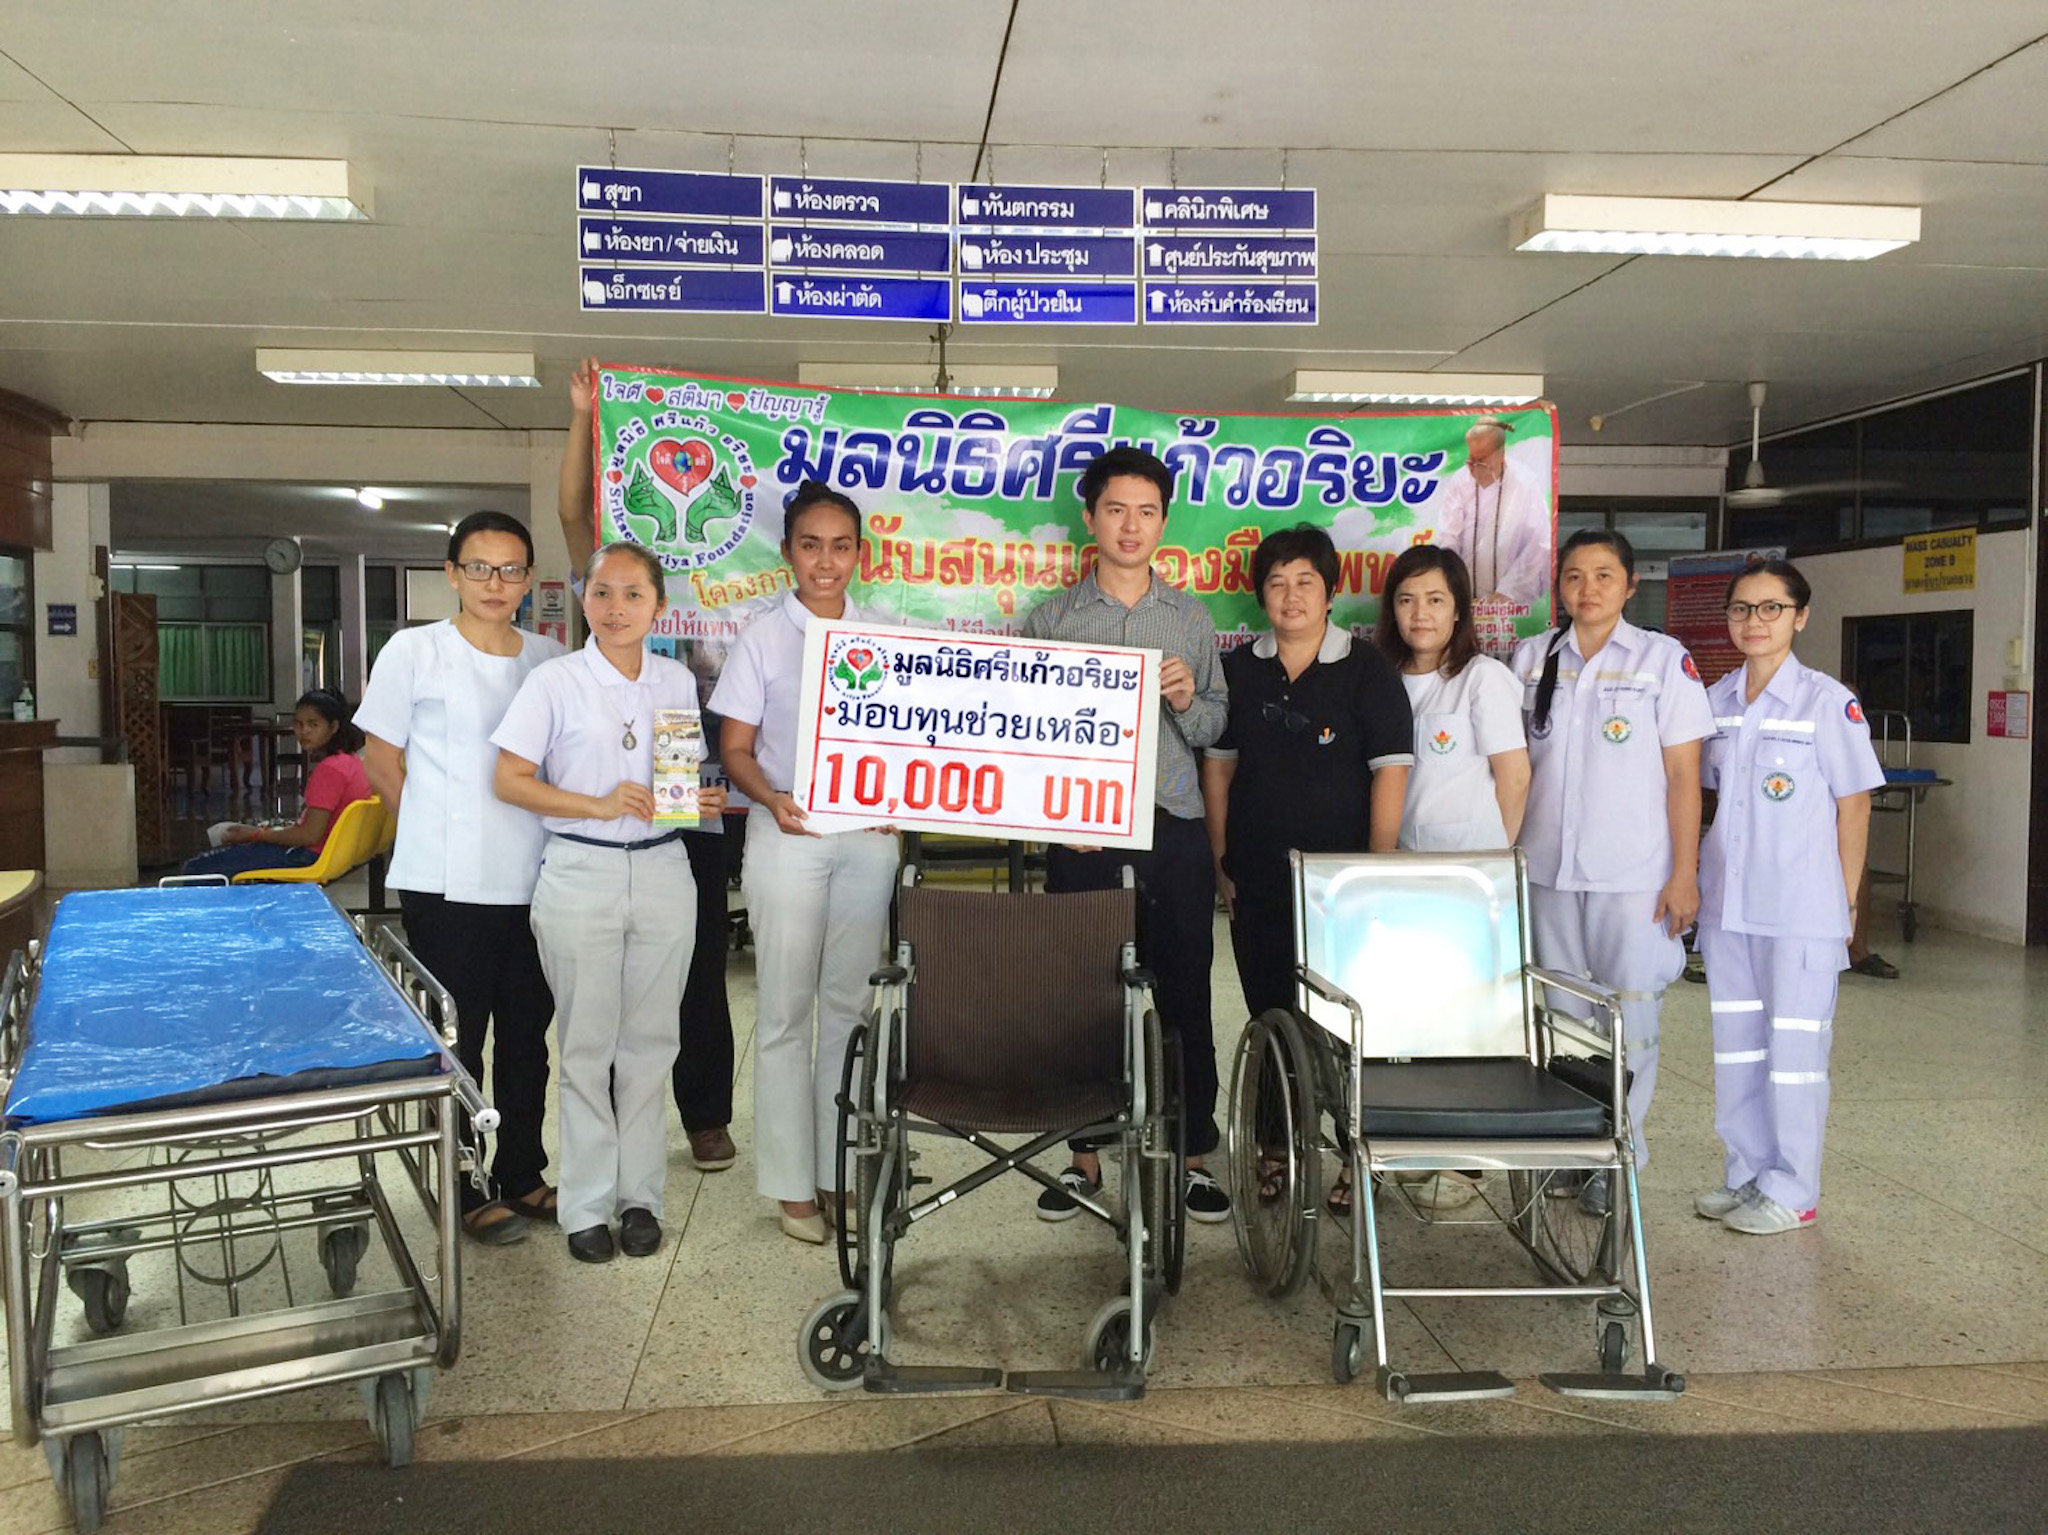 โครงการมอบทุนสนับสนุนเครื่องมือแพทย์  วันที่ 13 ตุลาคม 2559  ณ โรงพยาบาลบ่อไร่    อำเภอบ่อไร่  จังหวัดตราด